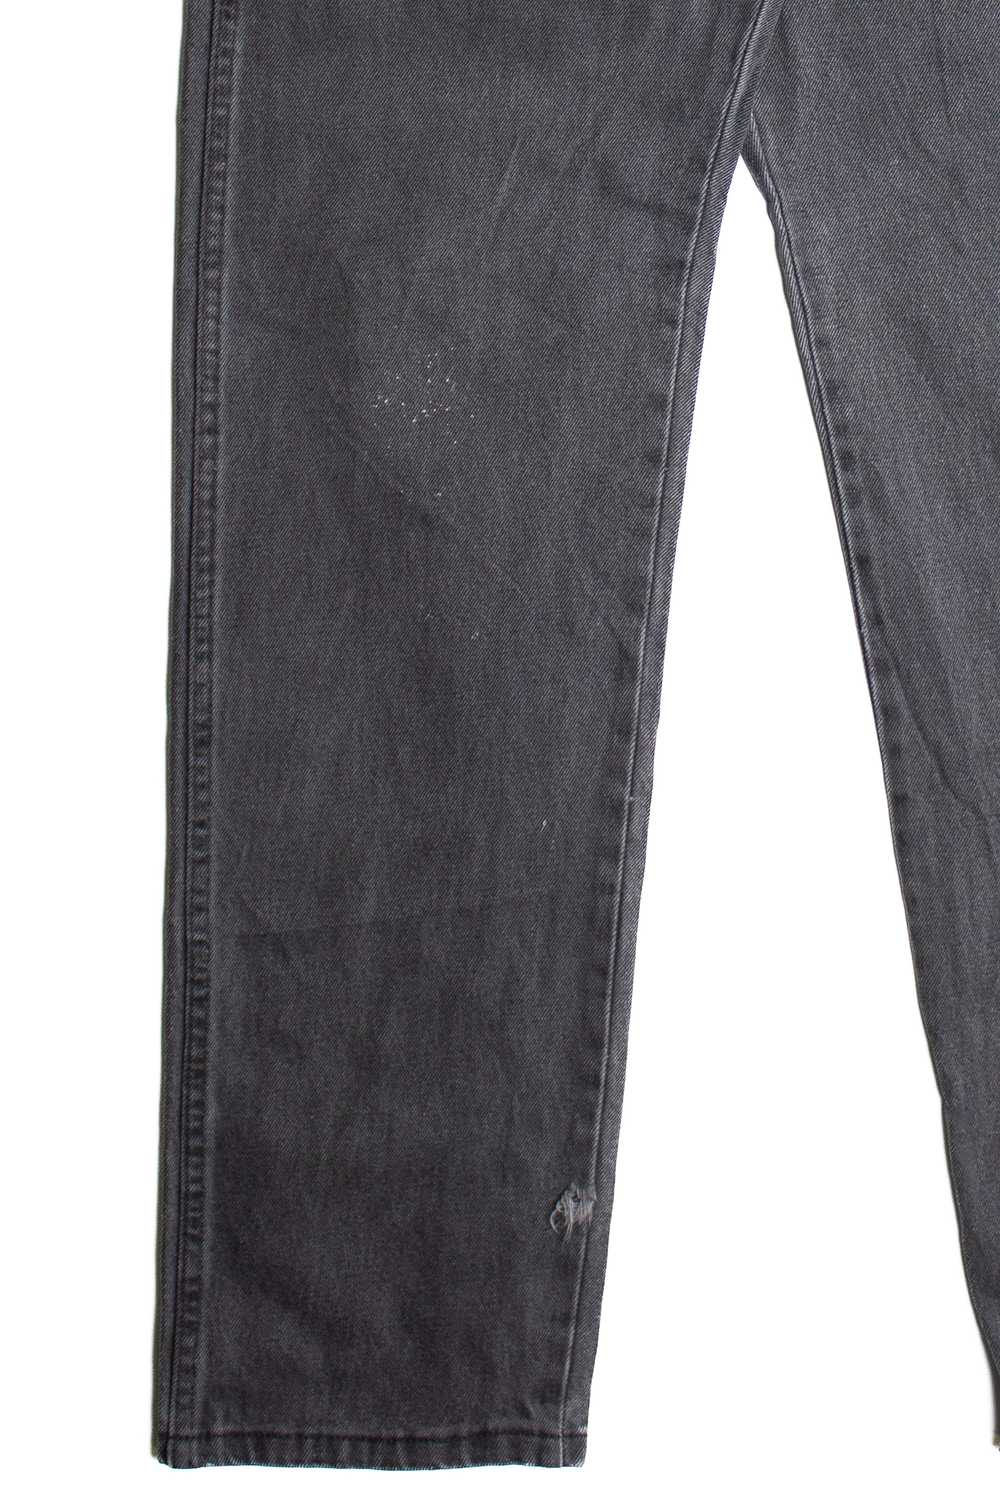 Vintage Rustler Denim Jeans (1990s) 1013 - image 2